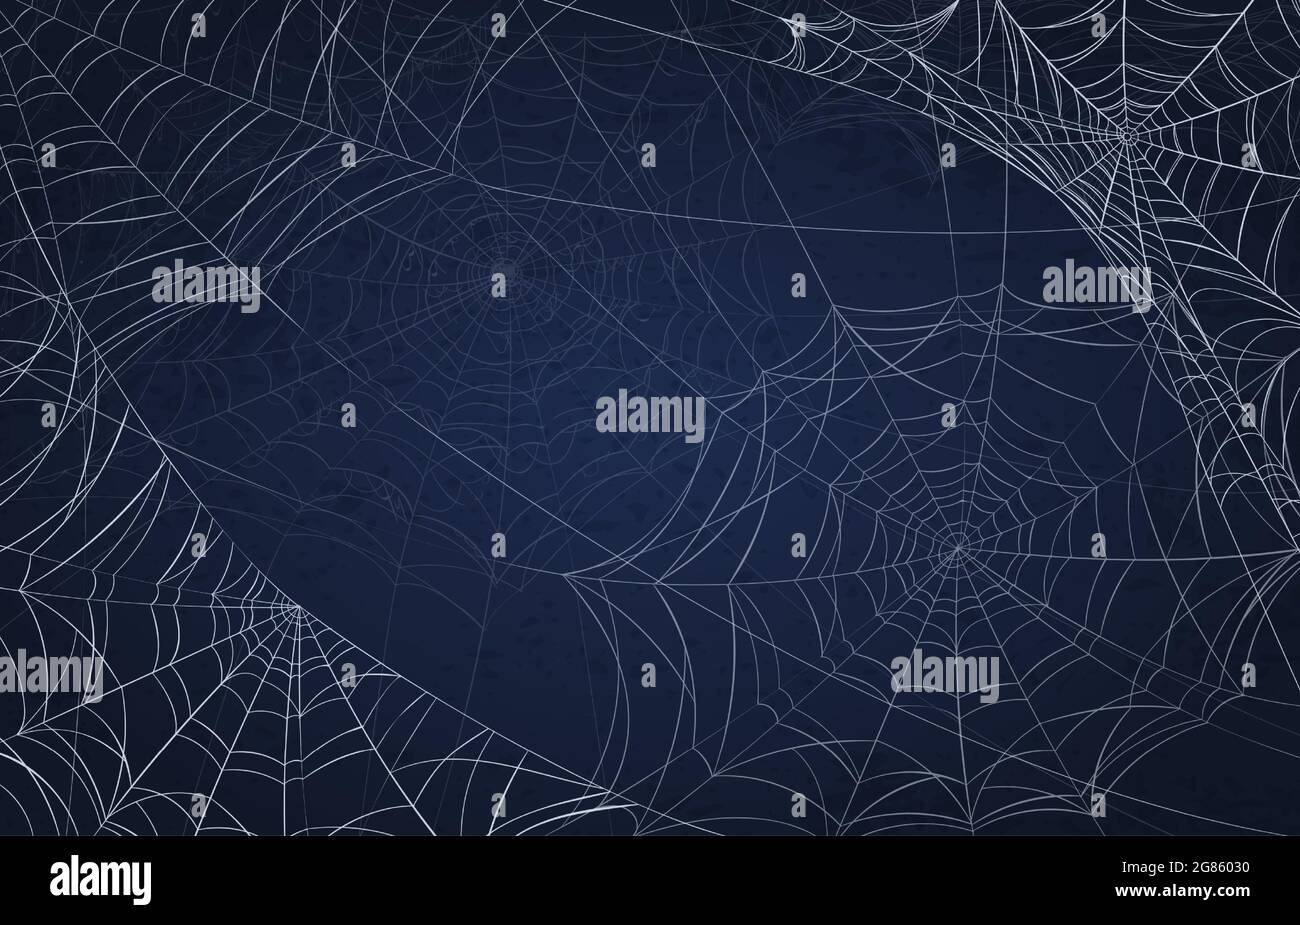 Spinnennetz Hintergrund für halloween. Gruseliges Muster mit realistischen Spinnweben. Gruselige Weihnachtsdekoration, gruselige Goth Spiderweb Vektor-Textur Stock Vektor